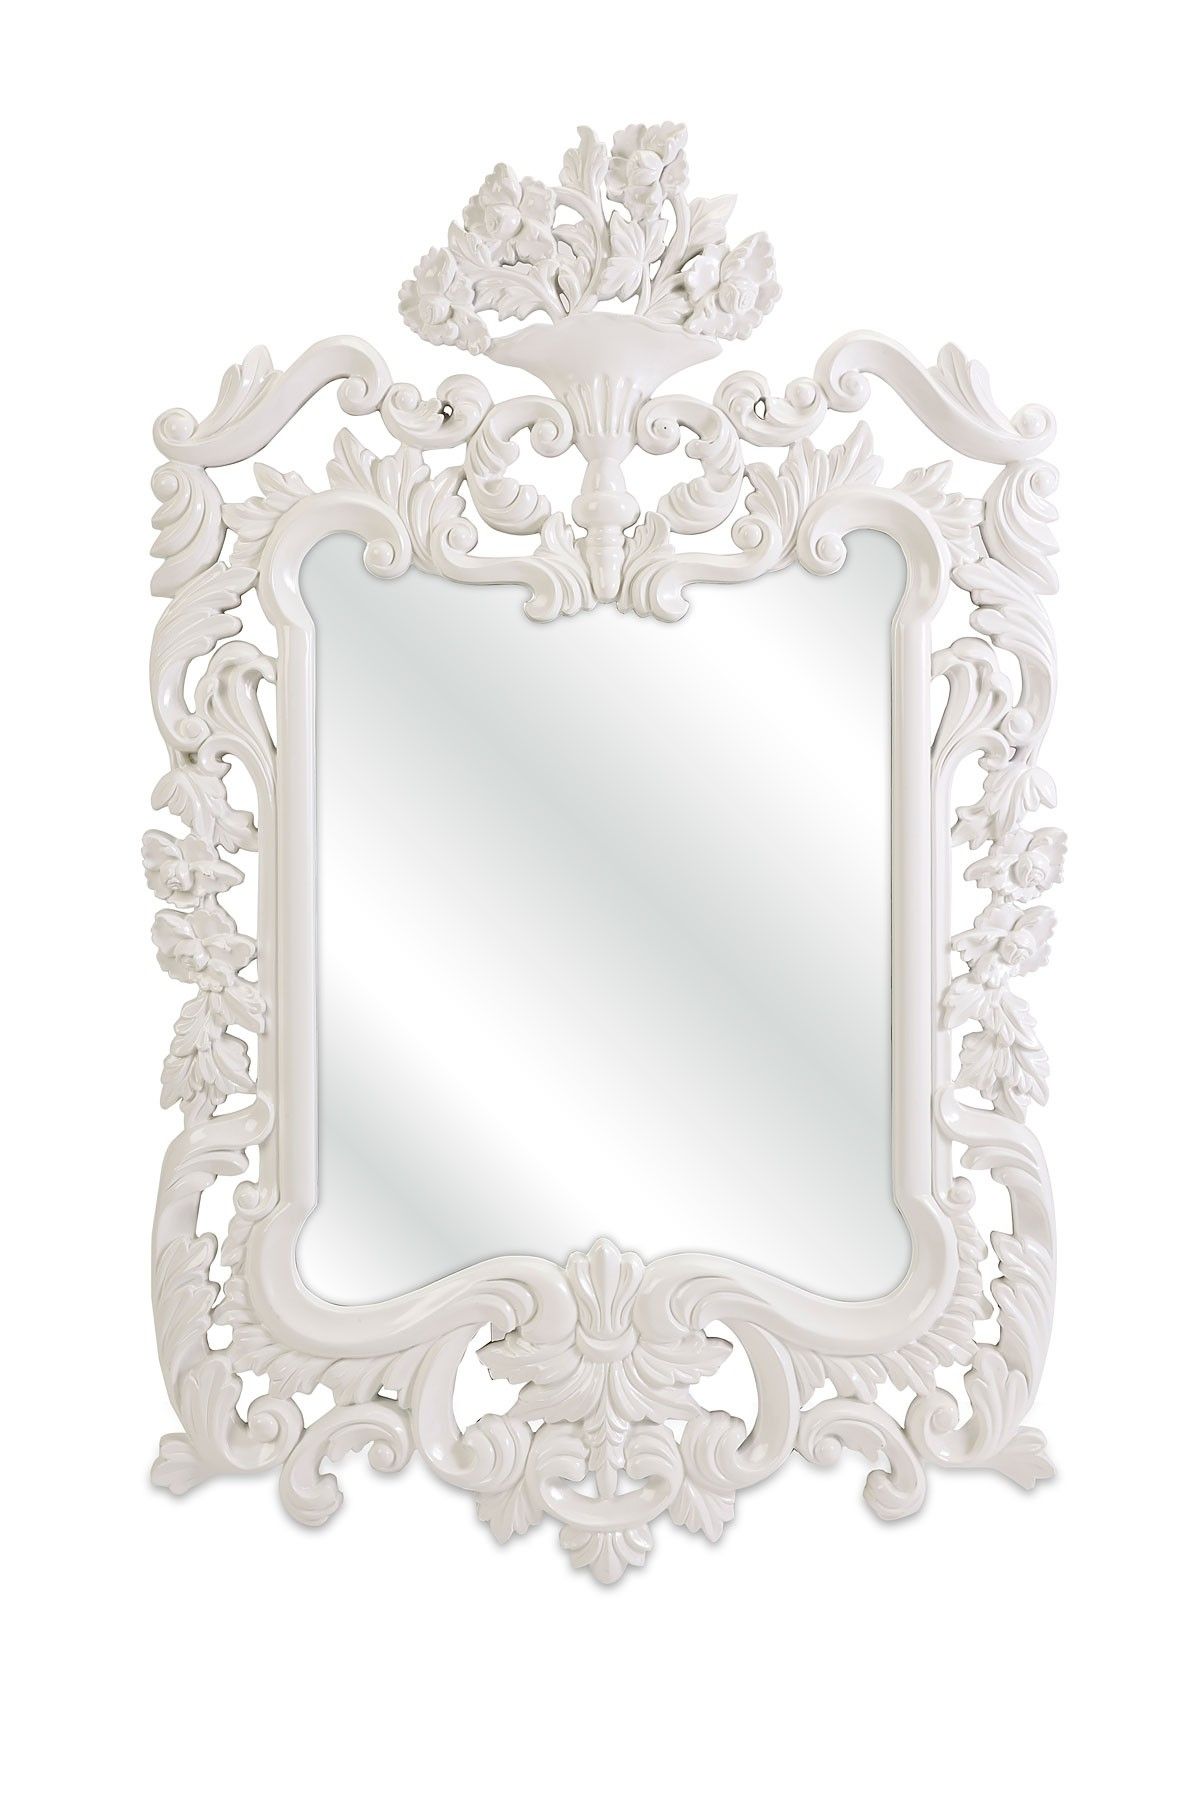 Baroque White Mirror House Pool Pinterest Barocco Intended For Baroque White Mirror (View 9 of 15)